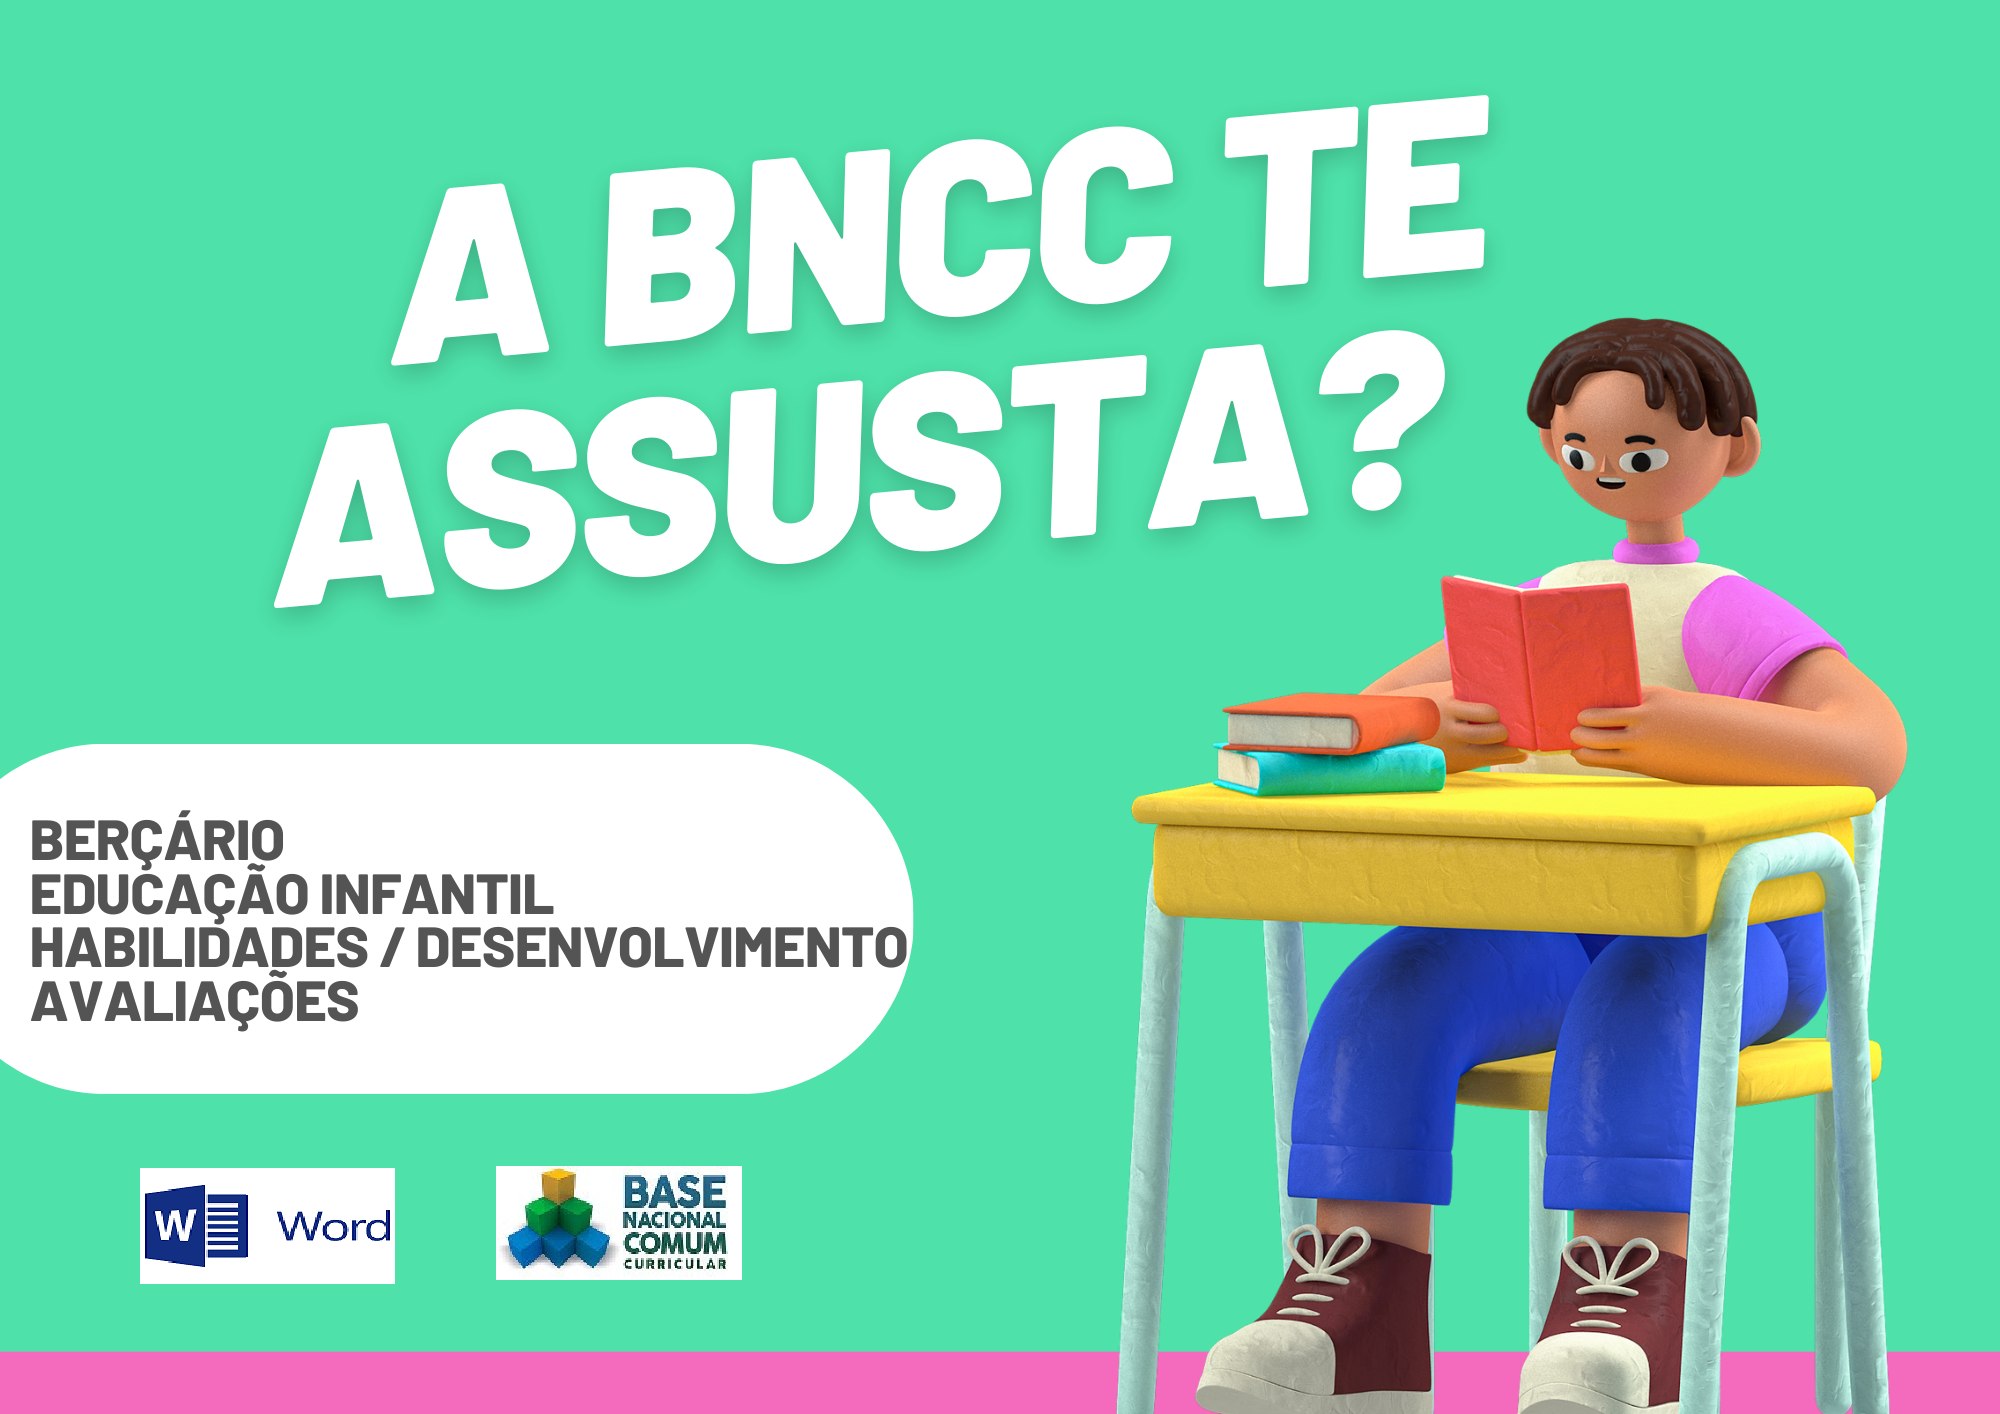 A BNCC te assusta berçário educação infantil habilidades desenvolvimento avaliações com um aluno segurando um livro e os símbolos do Word e da BNCC